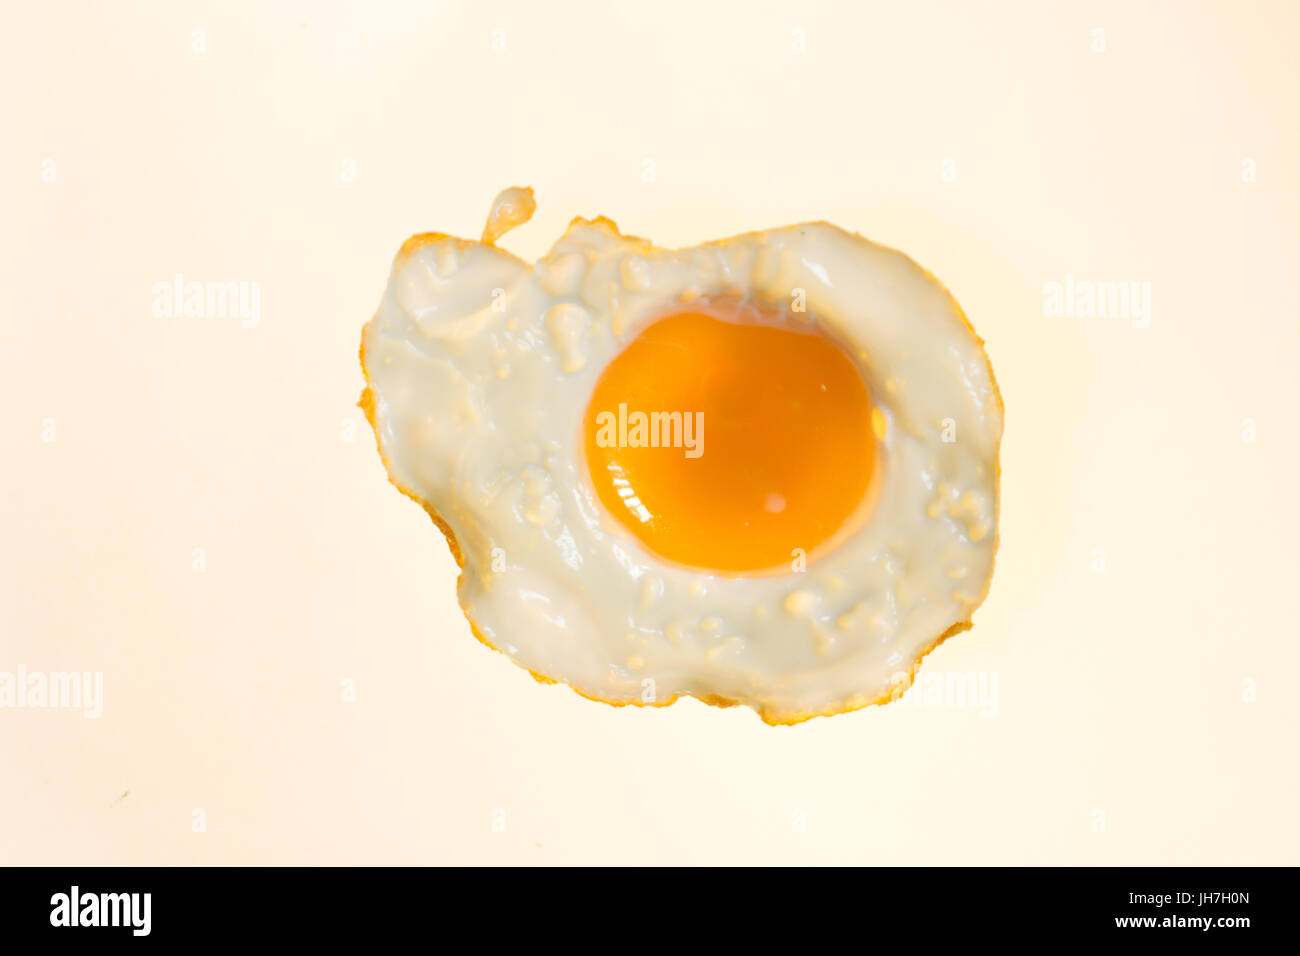 Fotografia di un uovo fritto dettaglio Foto Stock